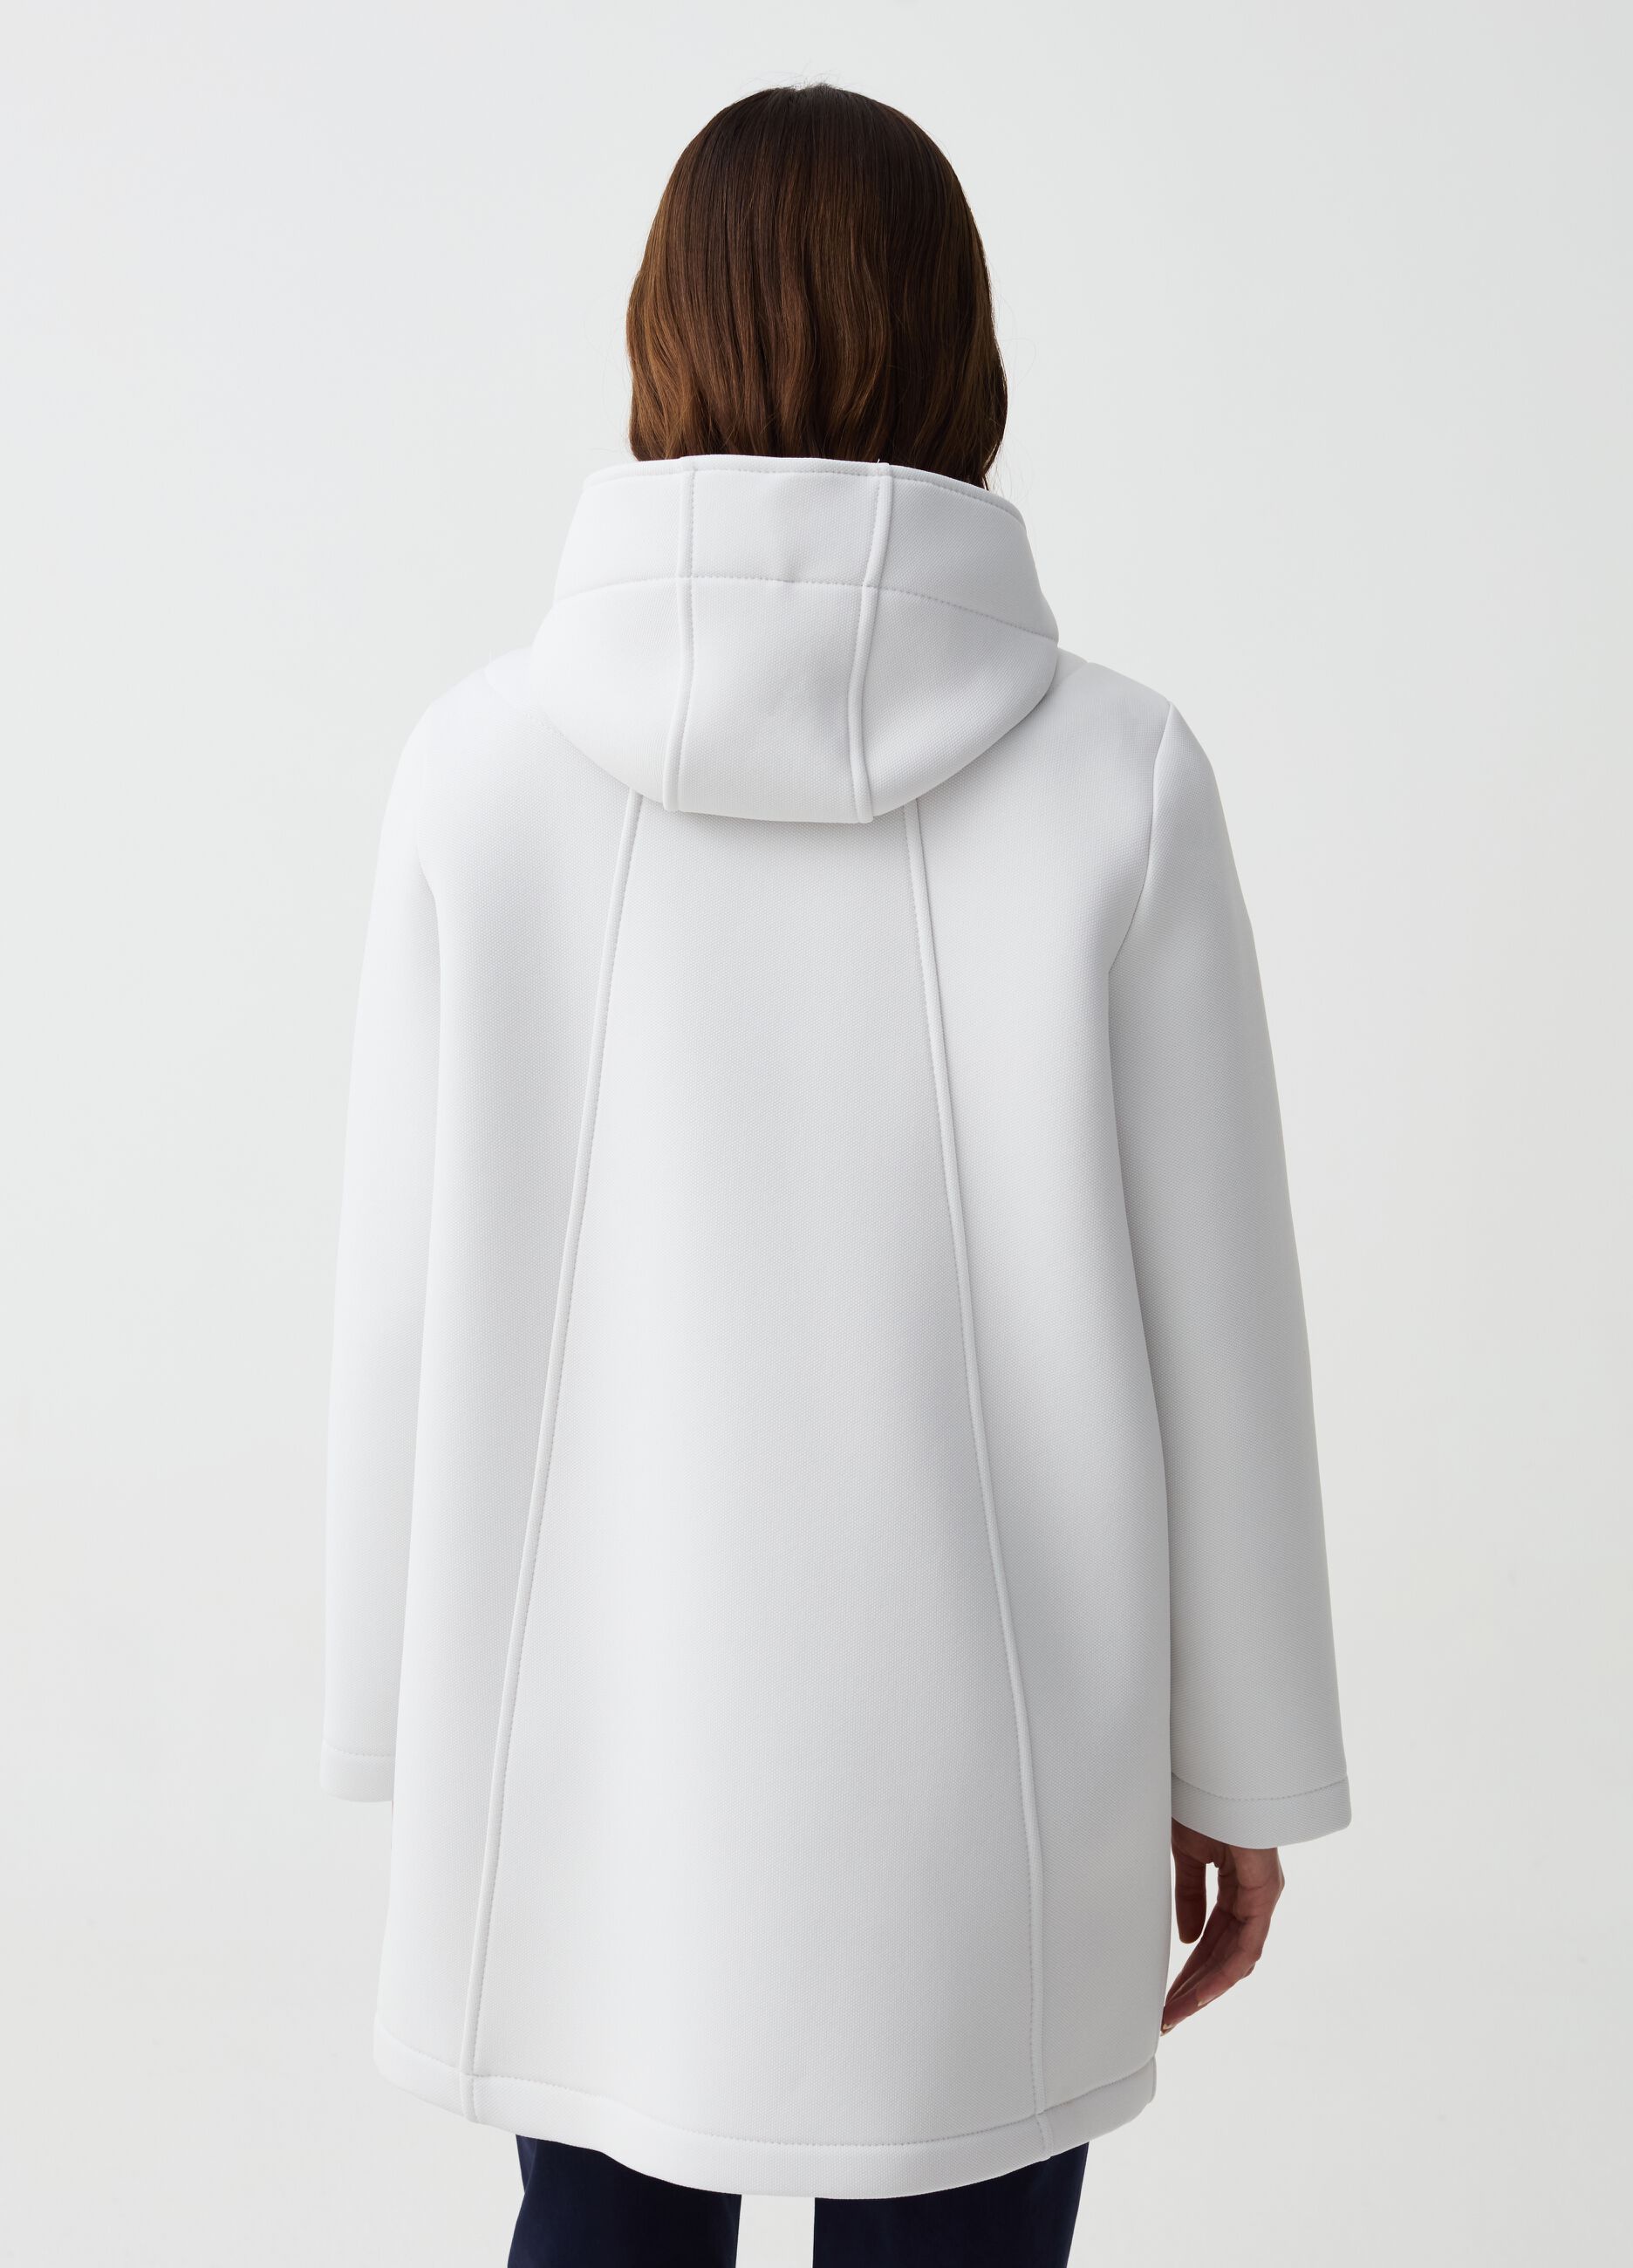 Long jacket with hood